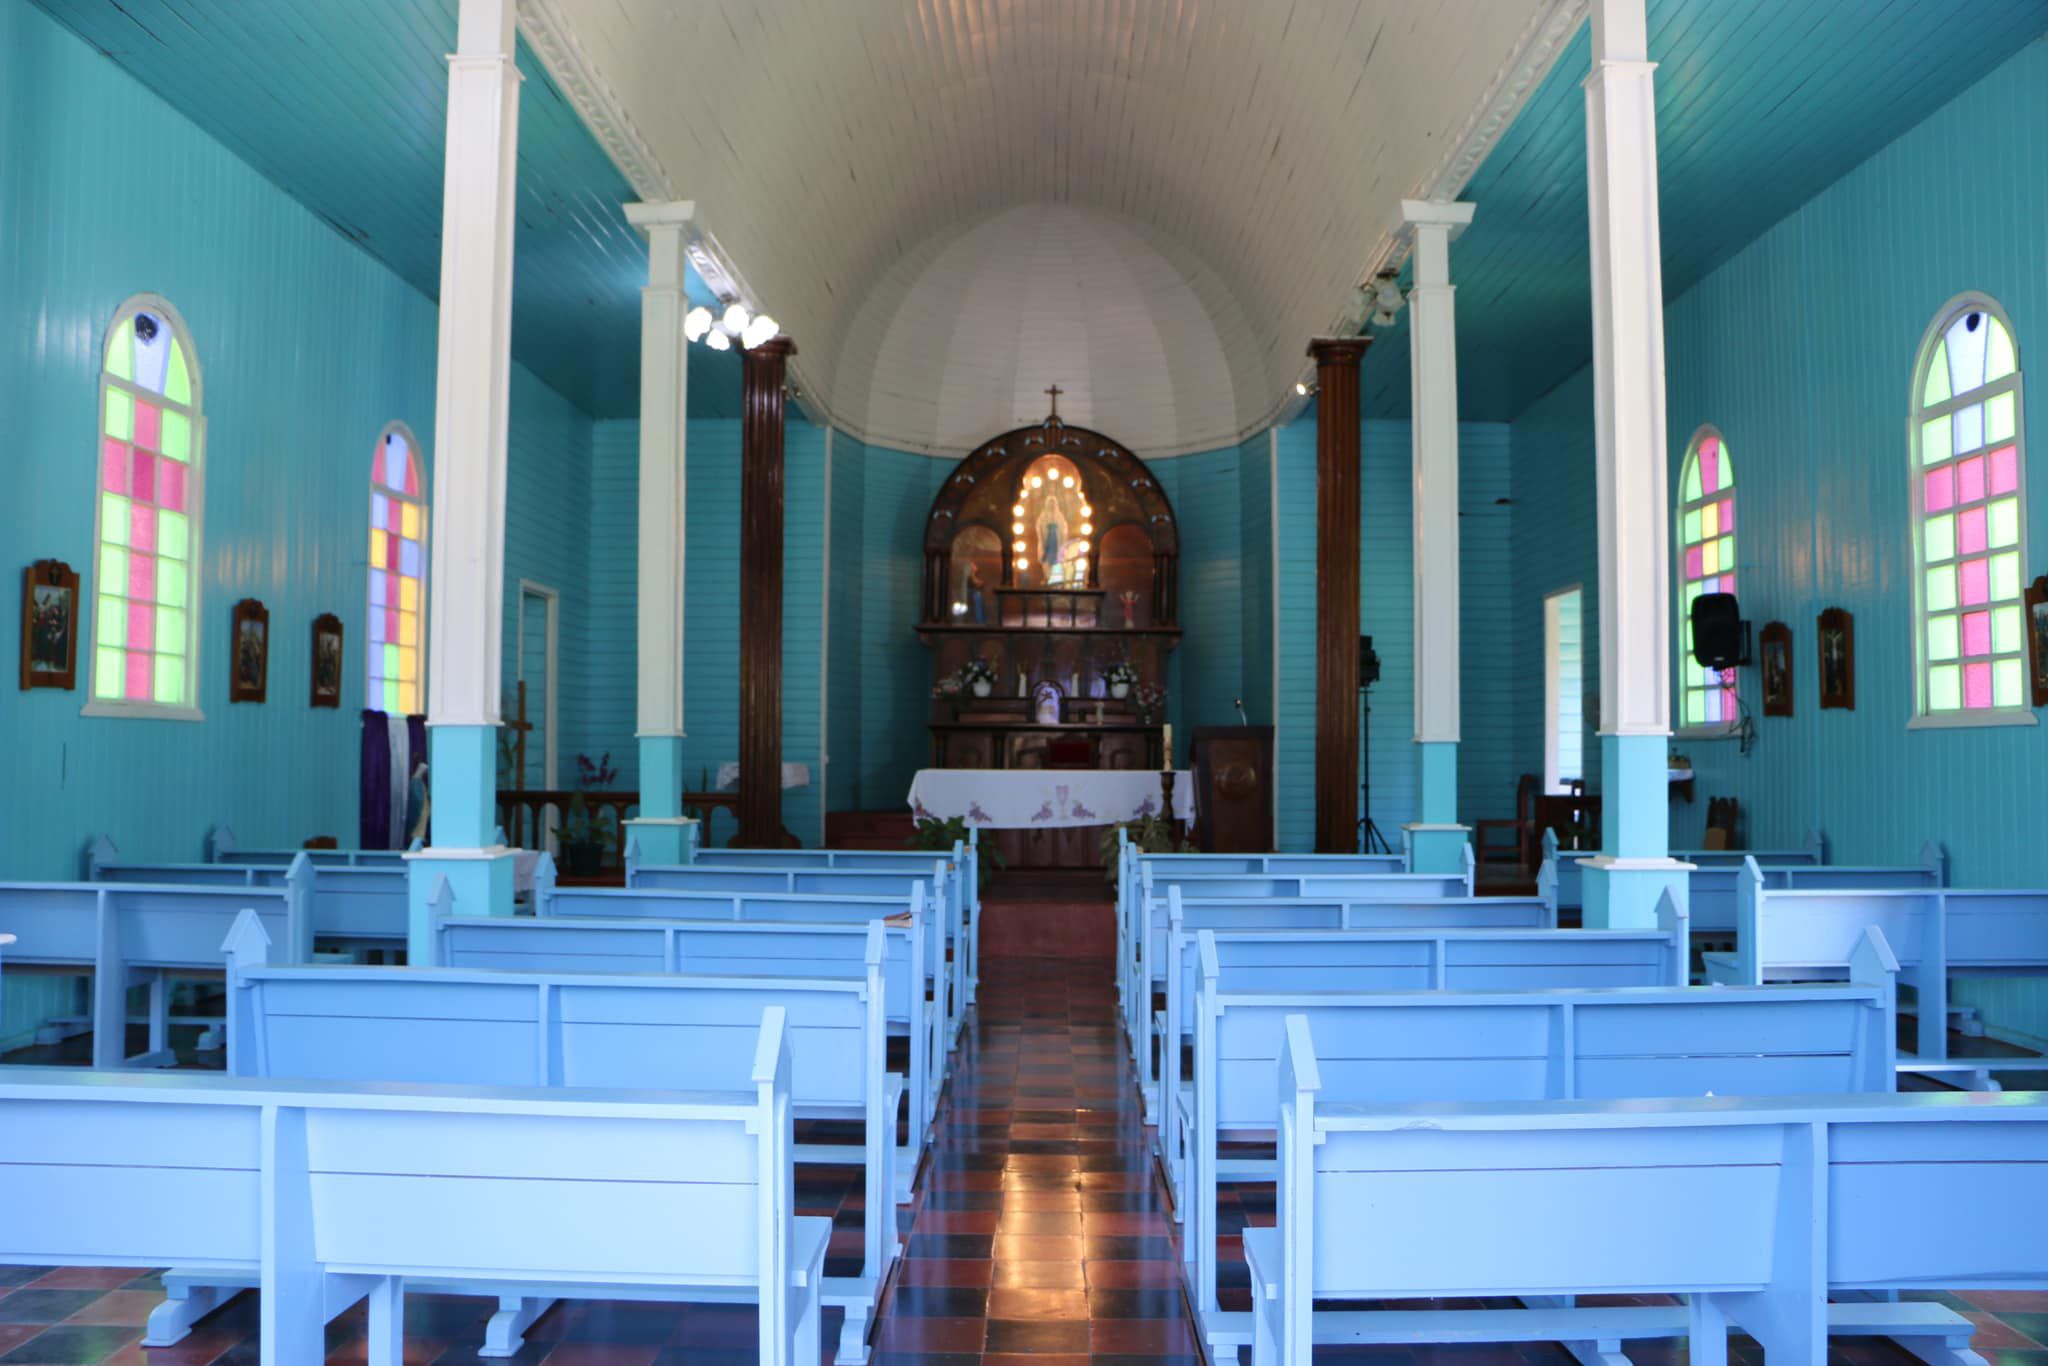 La ermita de Llano Grande tiene su color característico en celeste en el interior. Fotografía: Ministerio de Cultura y Juventud